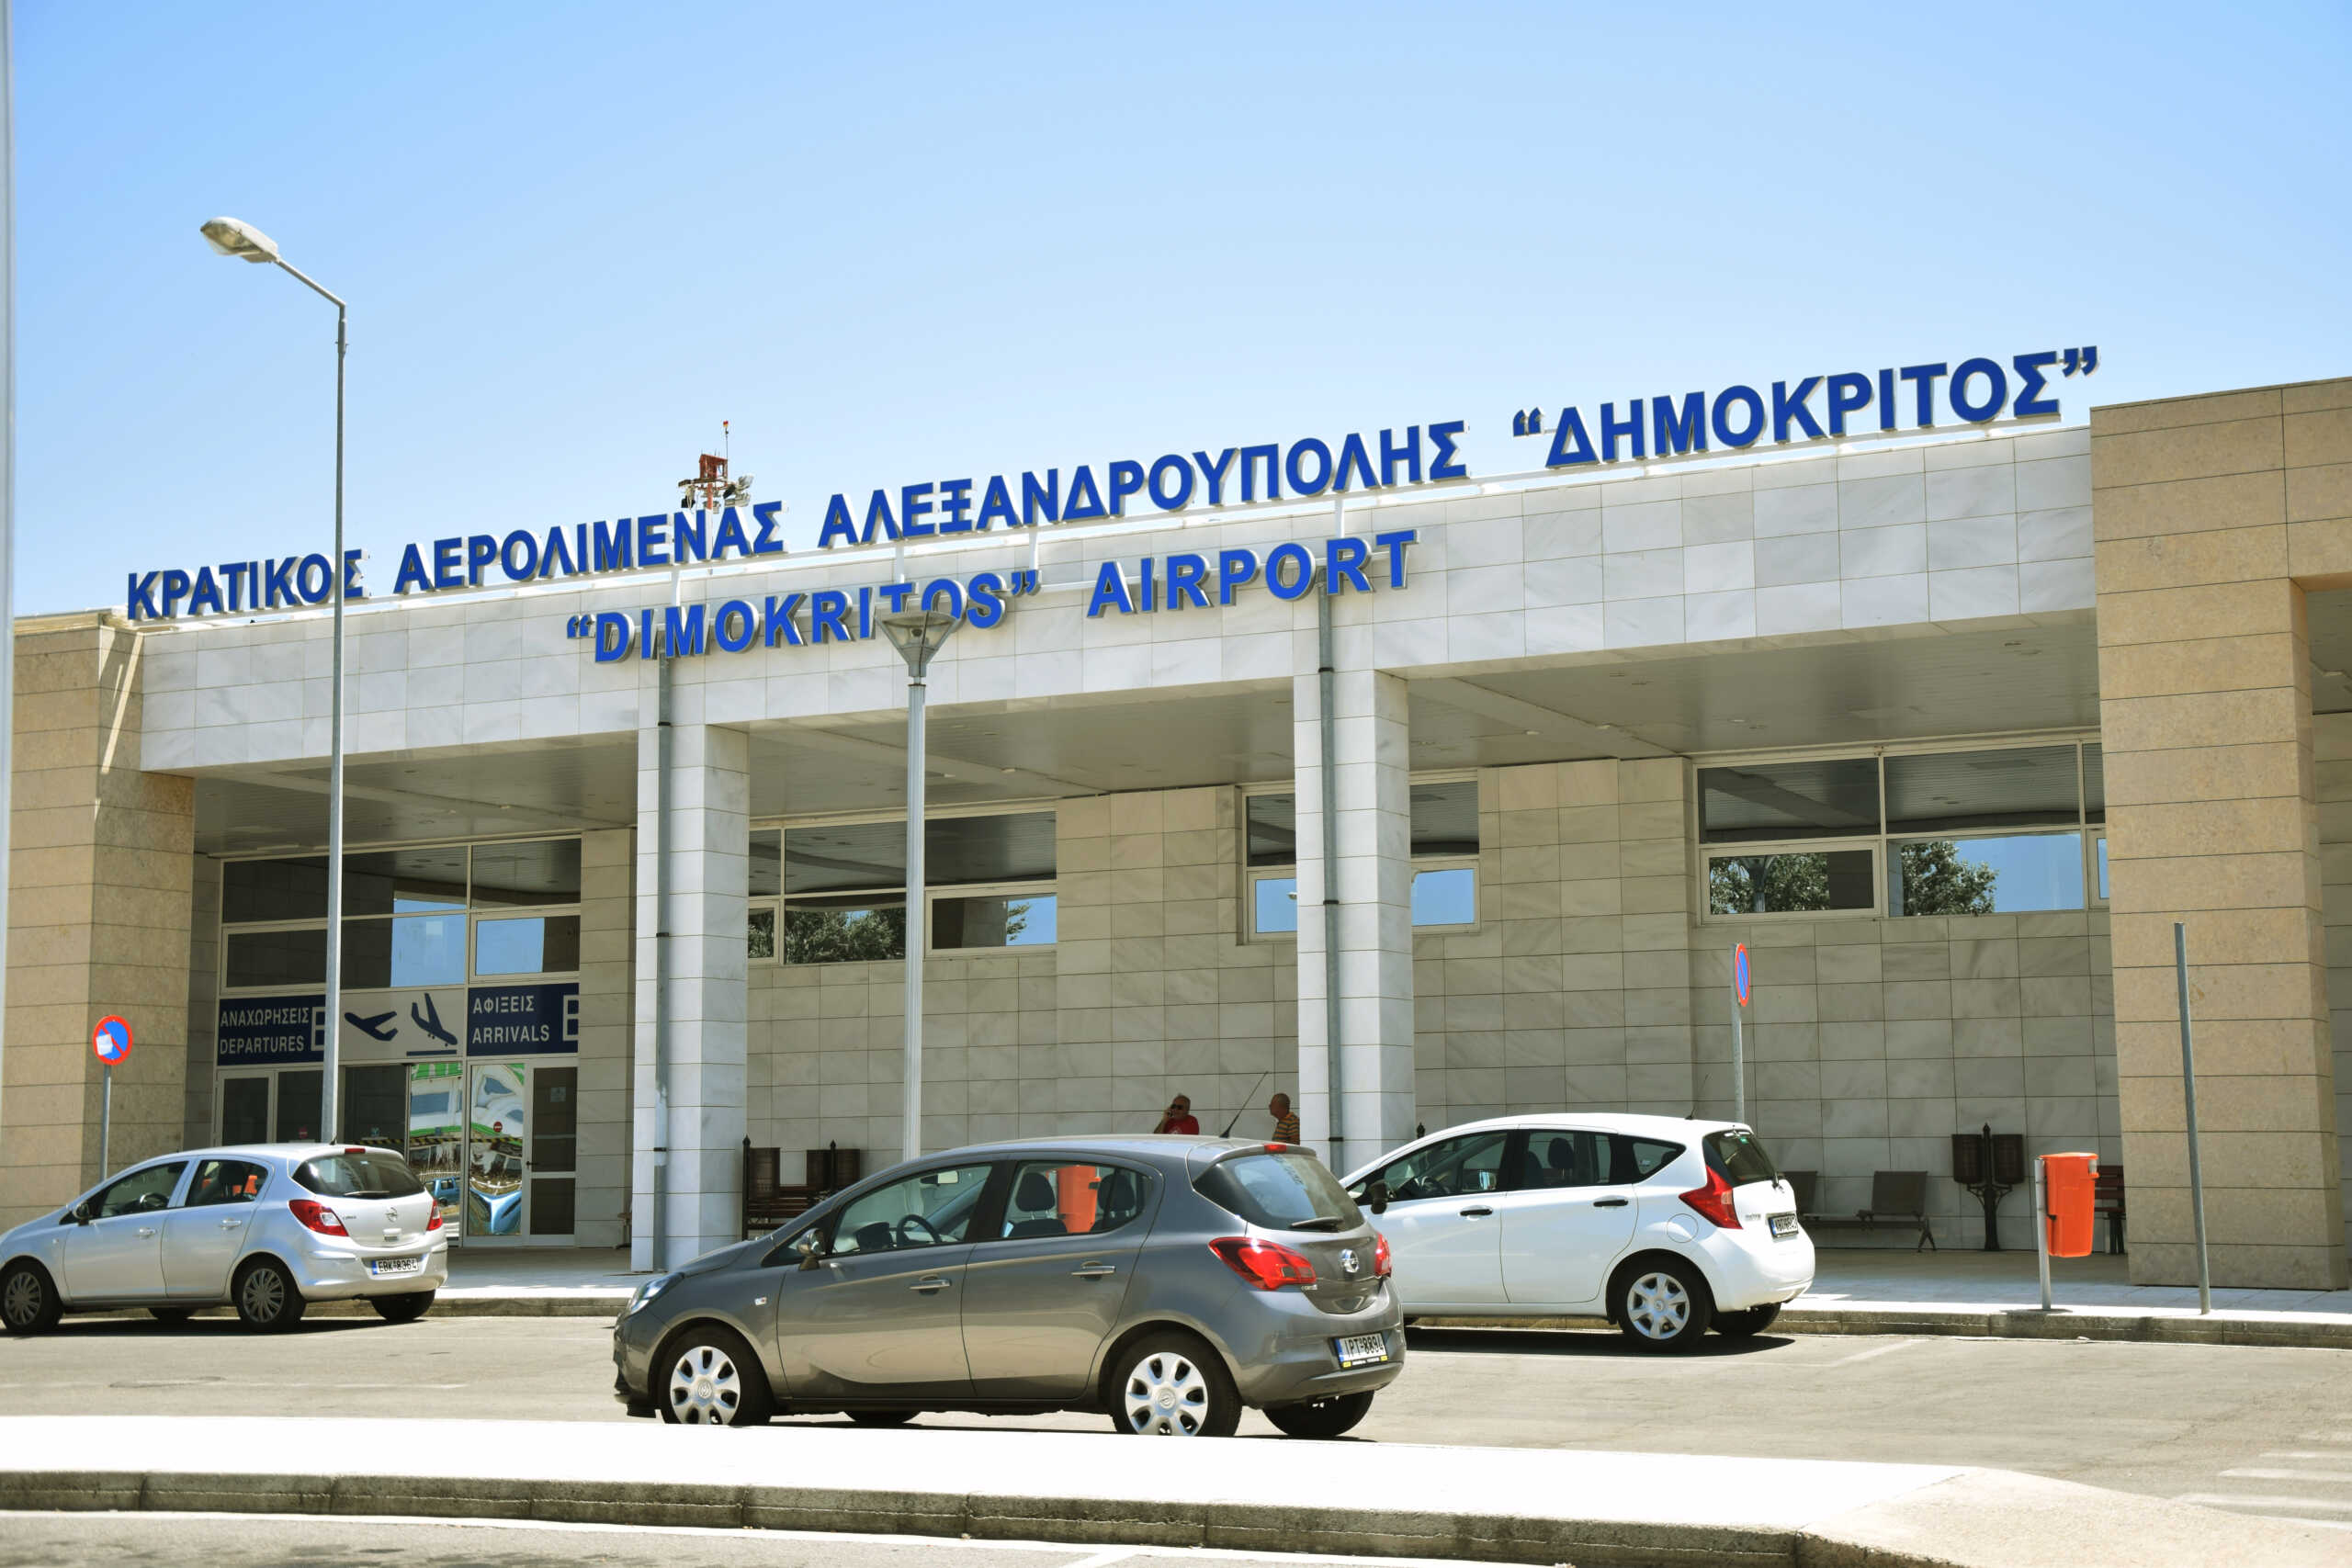 Αλεξανδρούπολη: Σμήνος πουλιών επιτέθηκαν σε αεροπλάνο στο αεροδρόμιο «Δημόκριτος»